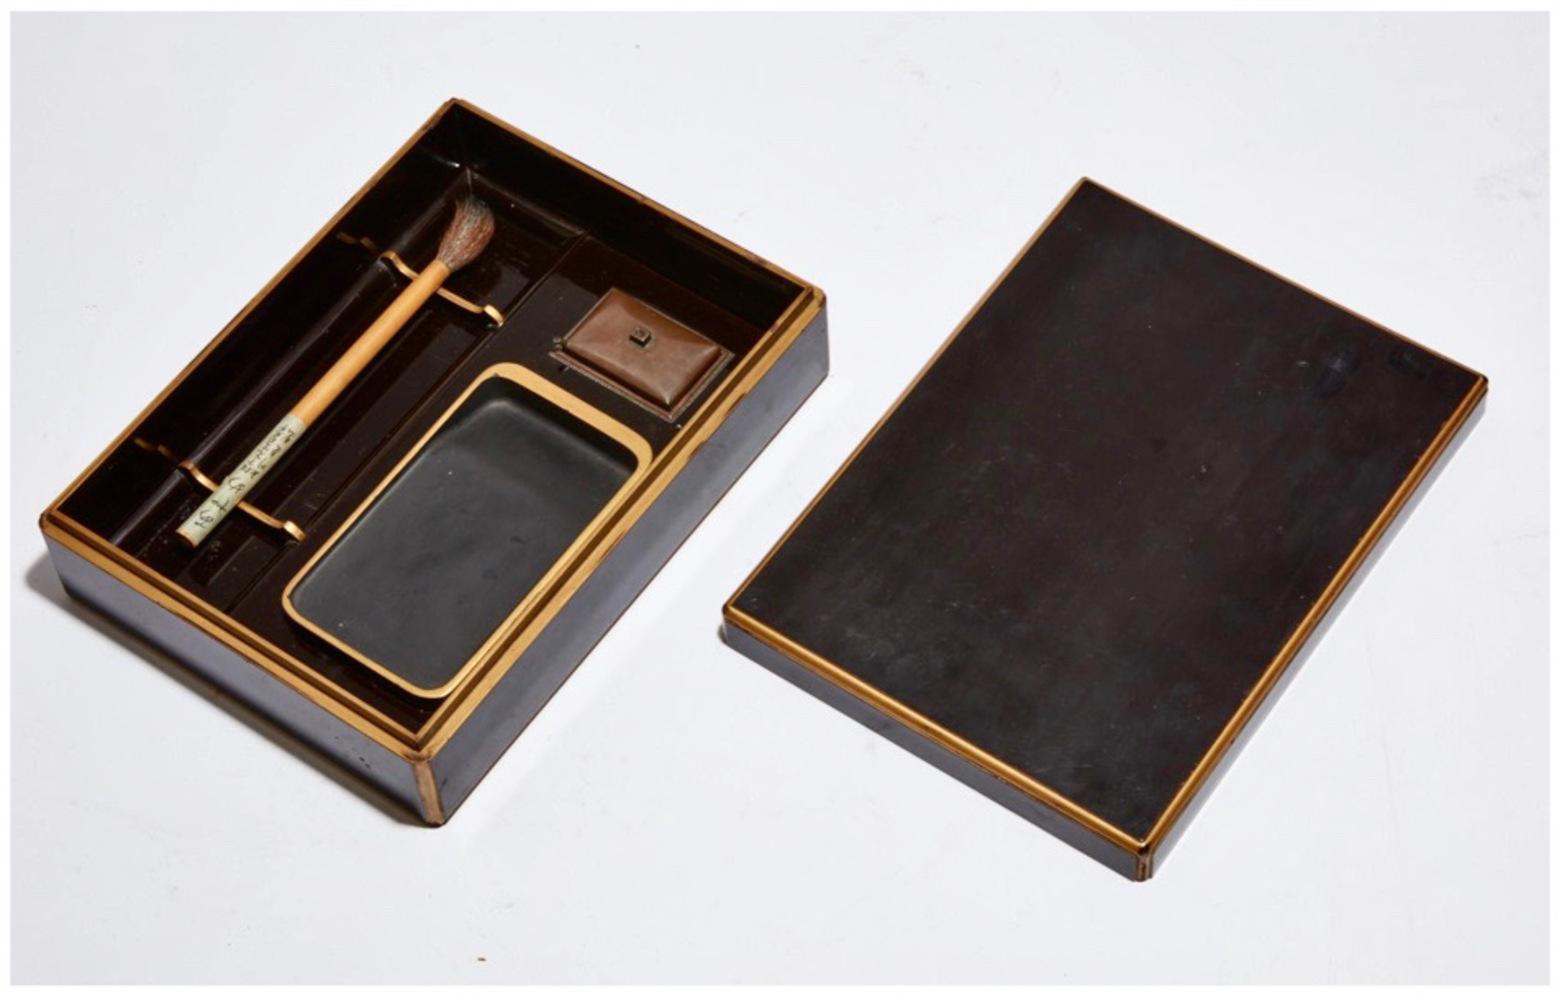 Es handelt sich um eine sehr elegante und schlichte japanische Kalligrafiebox aus der Mitte des 20. Jahrhunderts. Die minimalistisch und raffiniert gestaltete Box enthält den Pinsel und andere benötigte Schreibgeräte. Der Lack (den wir poliert